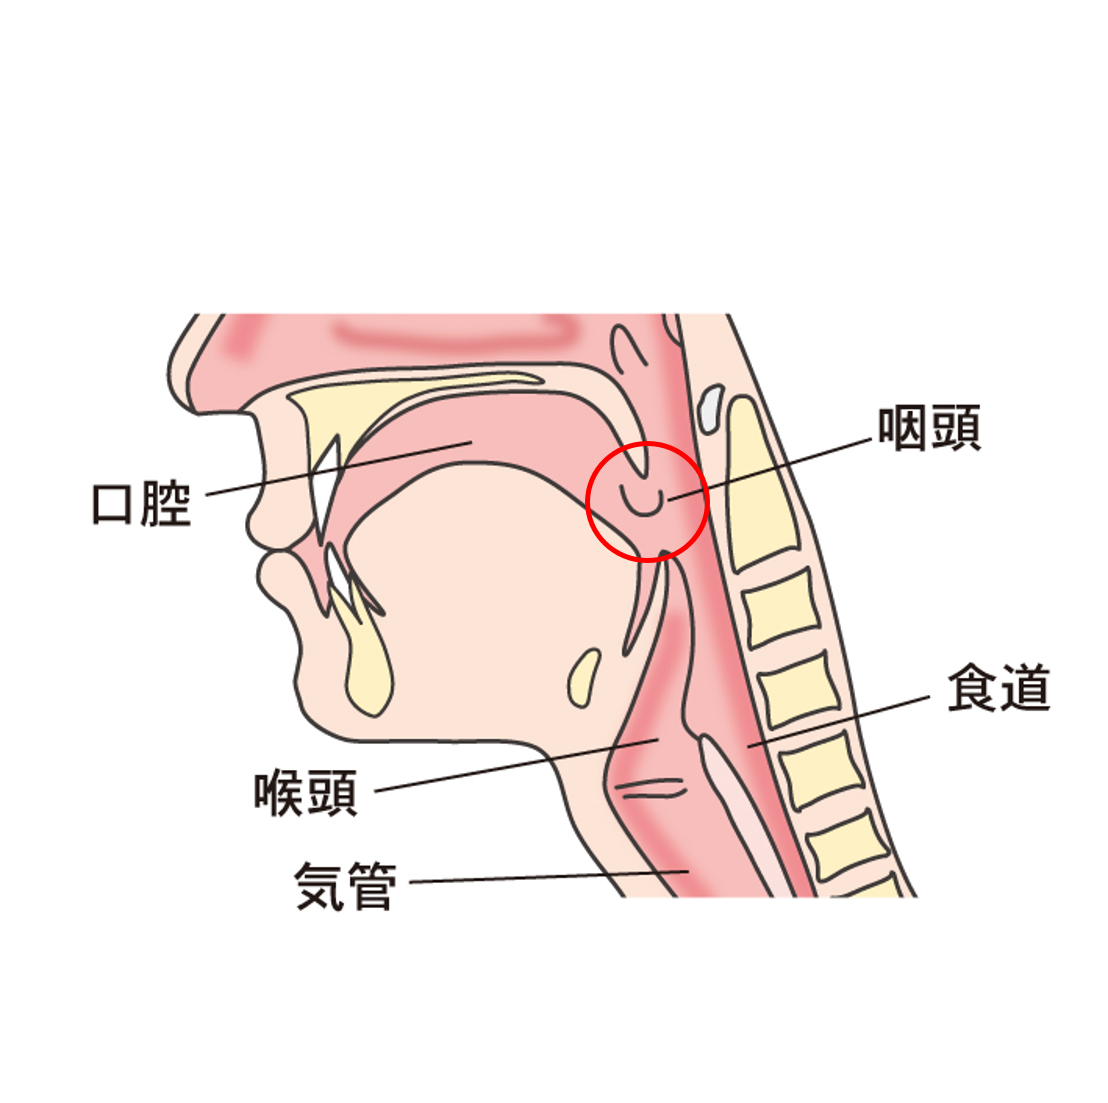 扁桃炎 咽頭炎 喉頭炎について 横浜市都築区のおおた耳鼻咽喉科